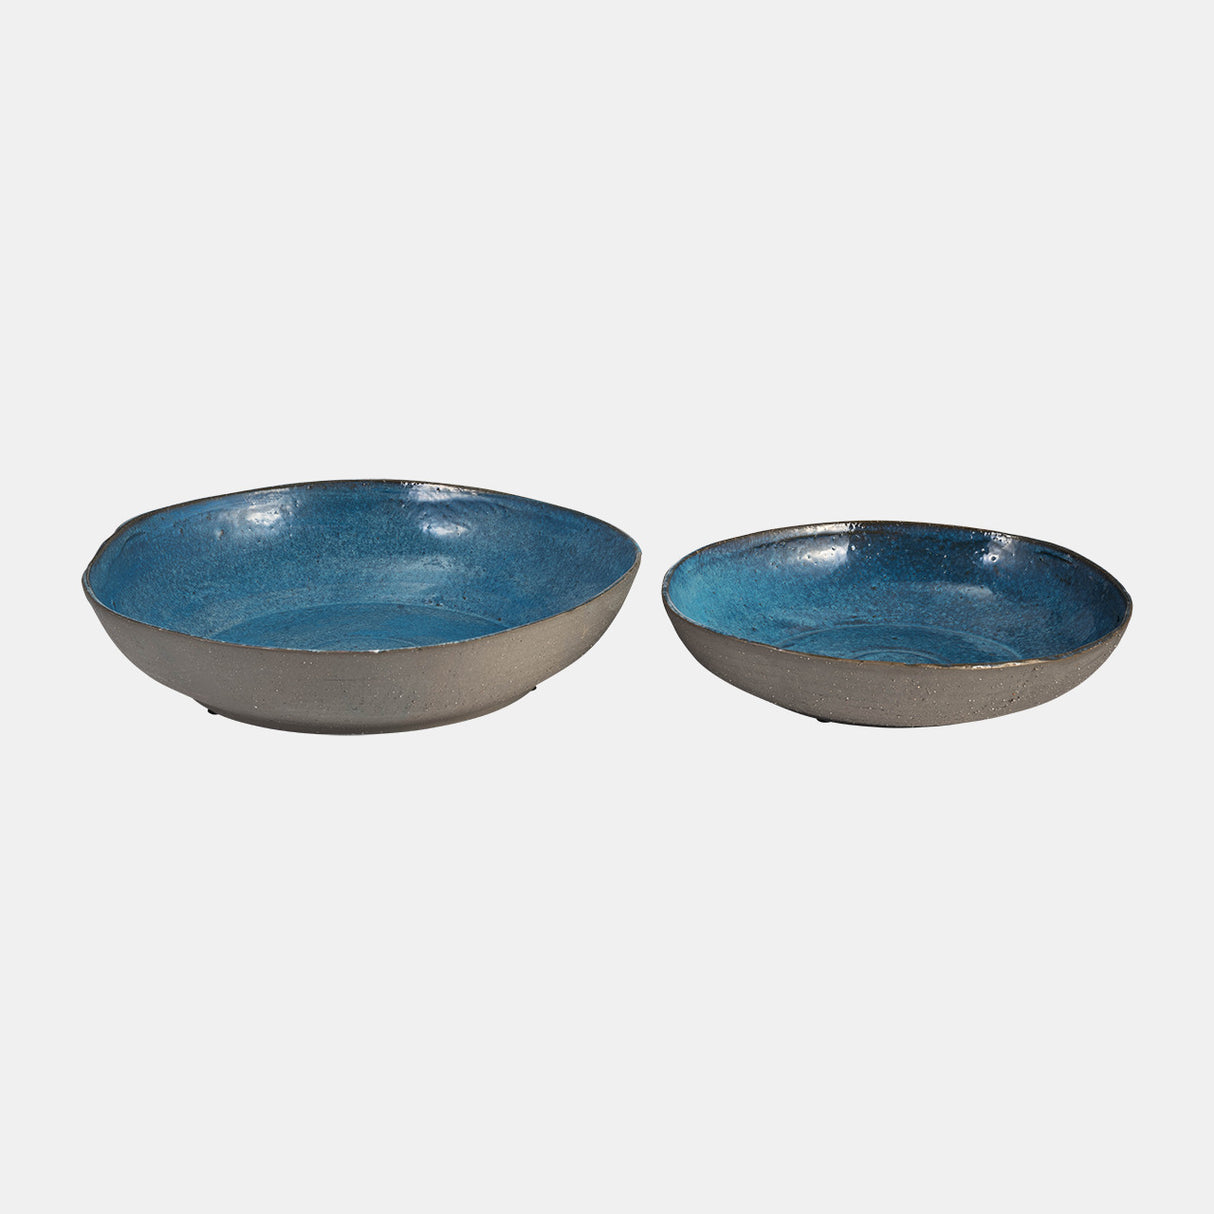 S/2 Ceramic 12/15" Bowls, Blue - 14352